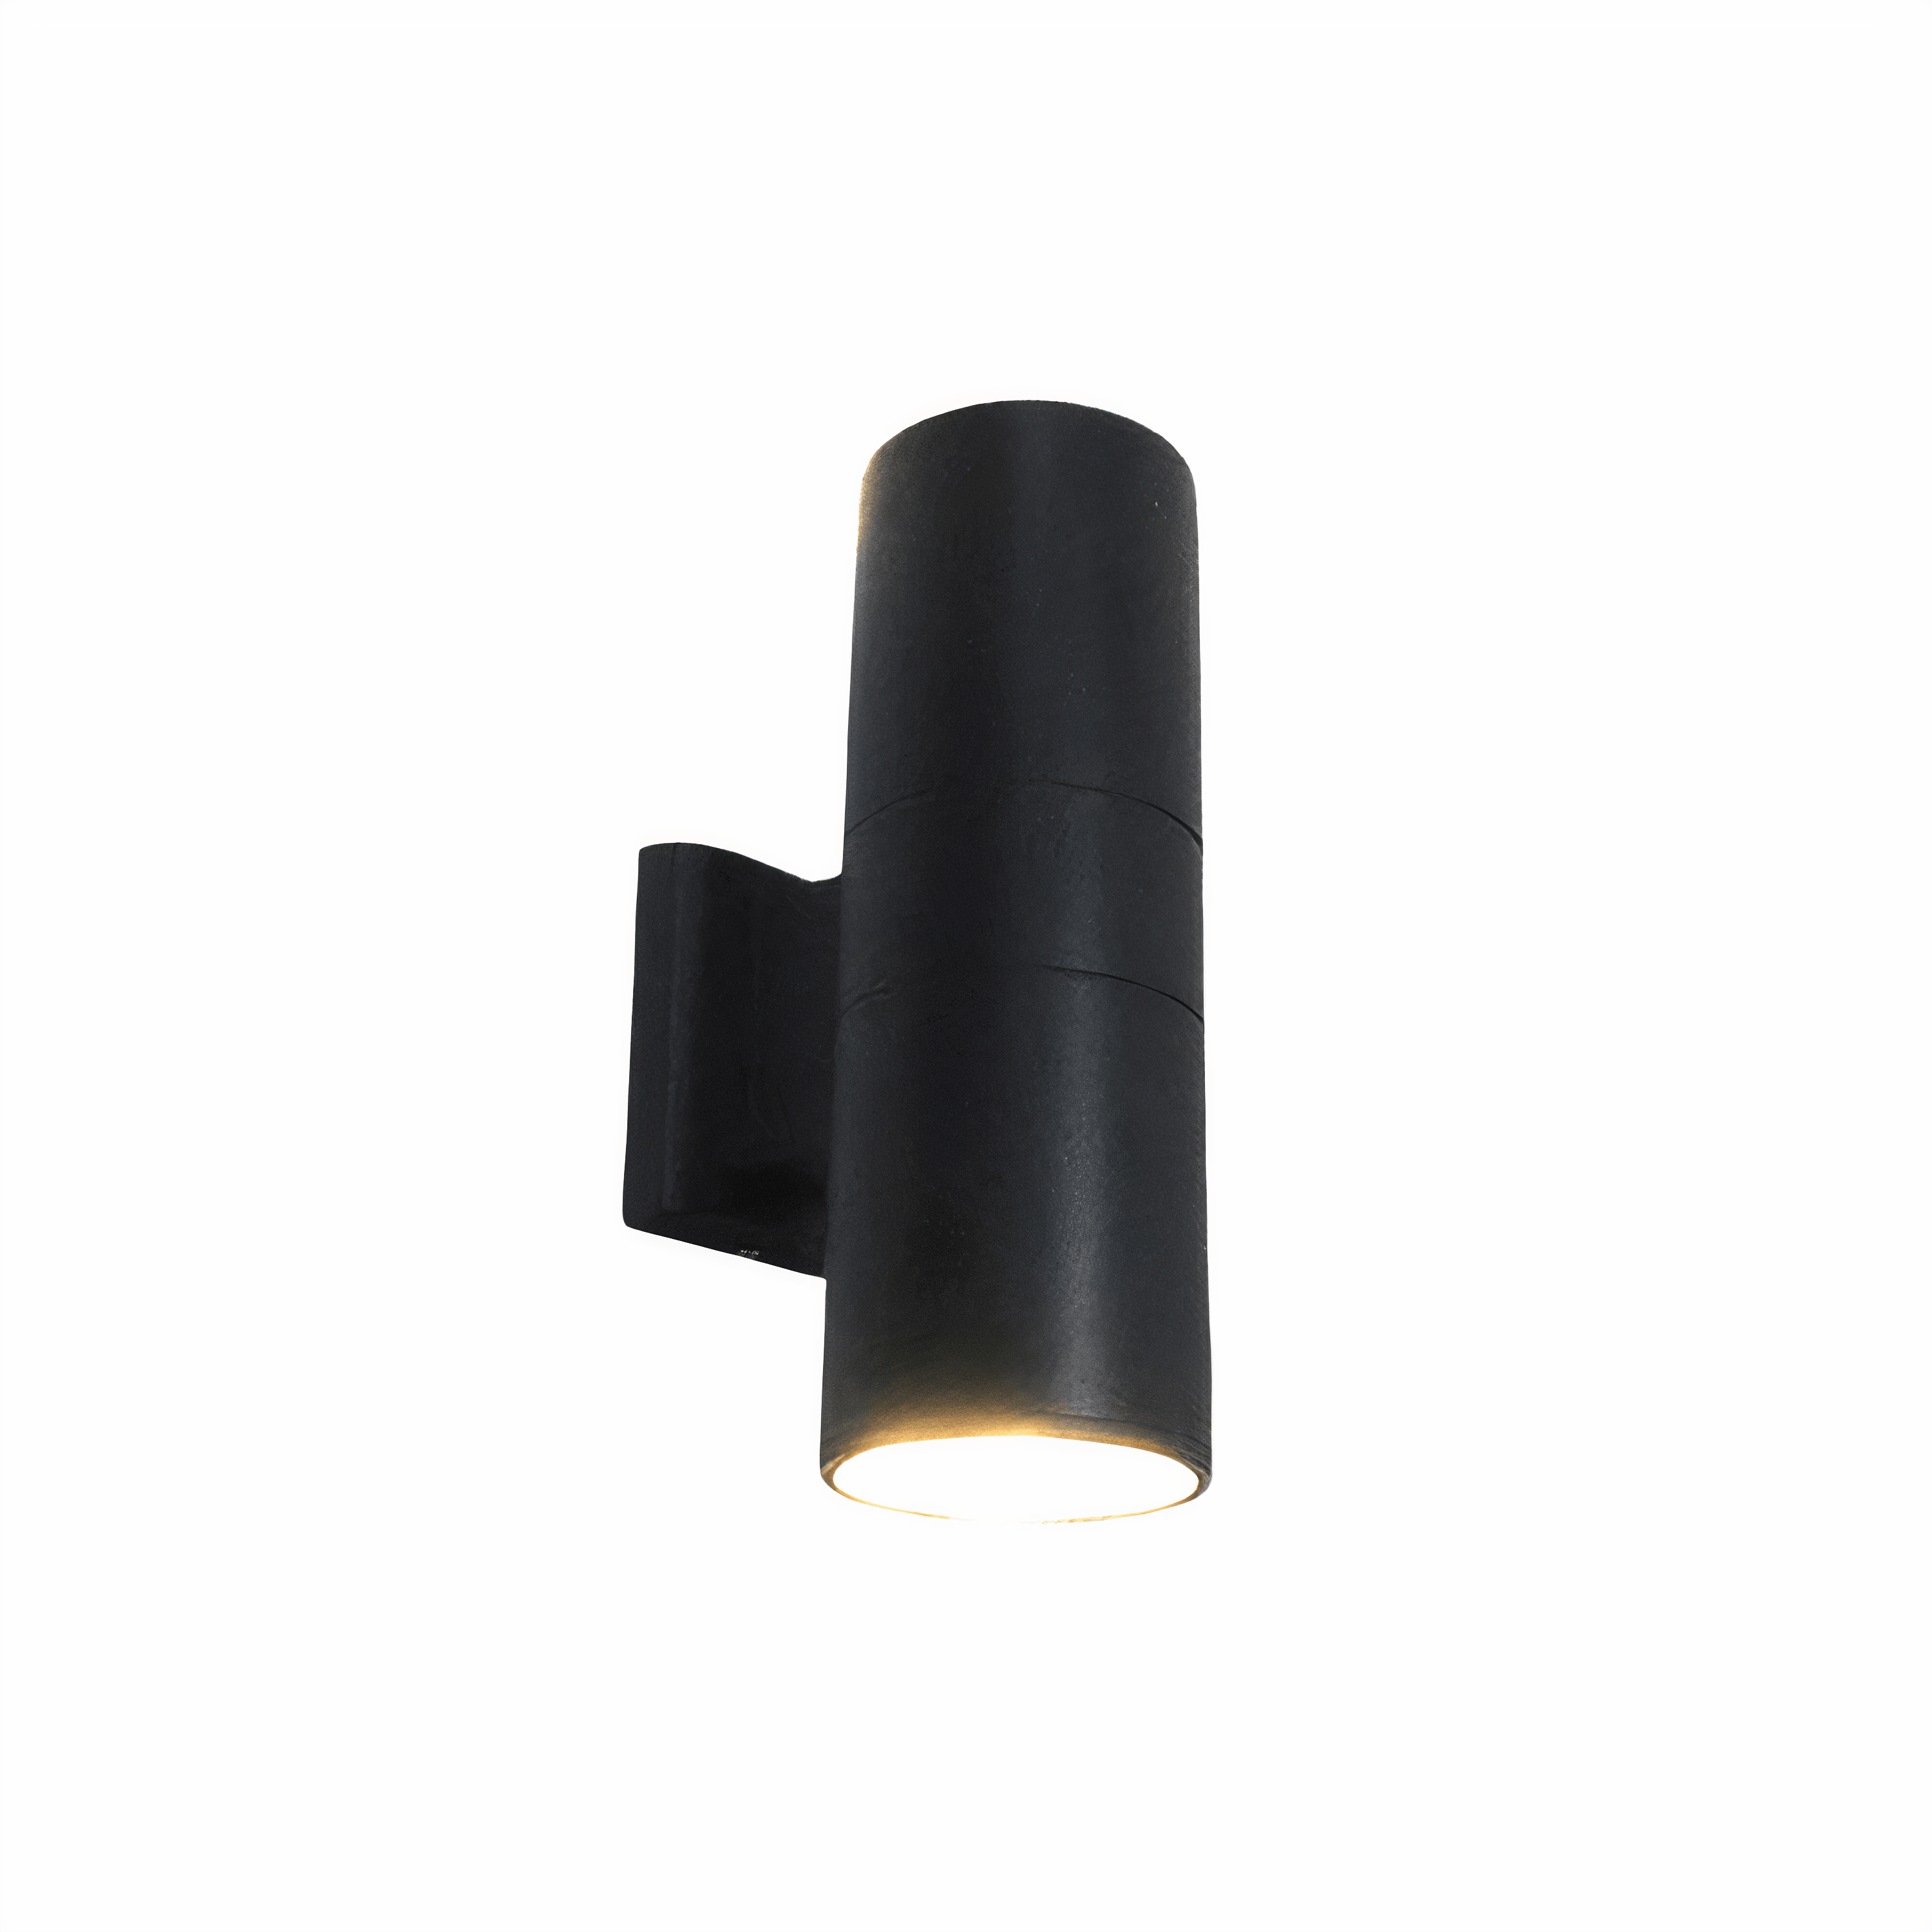 ORNE — decor studio - Luminária Arandela Moderna Tubo LED Duplo Externo IP65 Tube - undefined